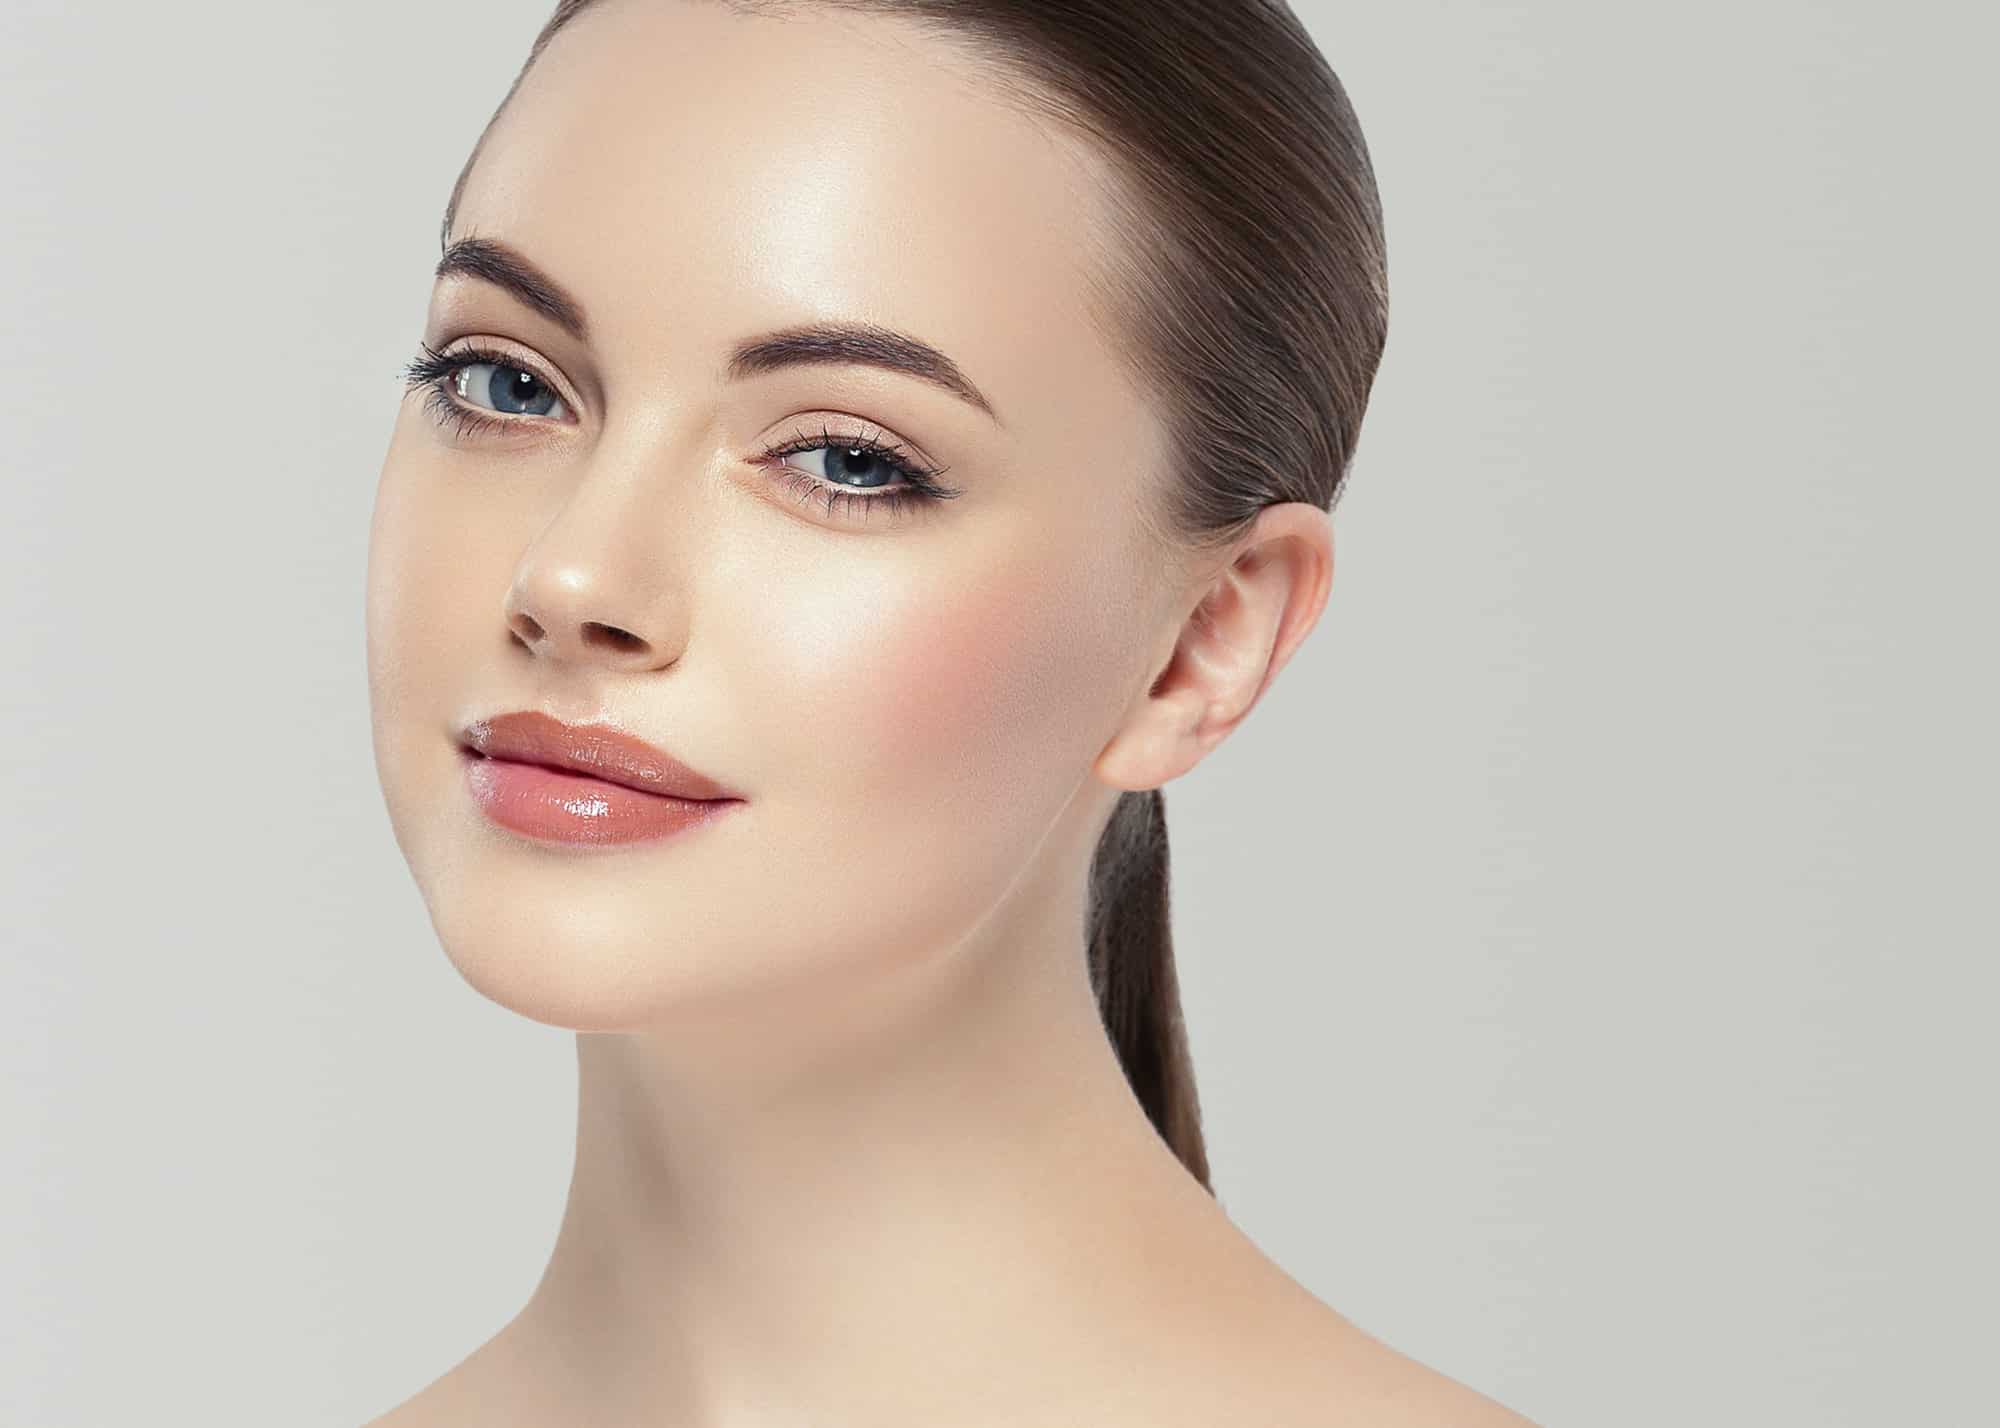 Maquillage naturel : guide pour un look frais et éclatant